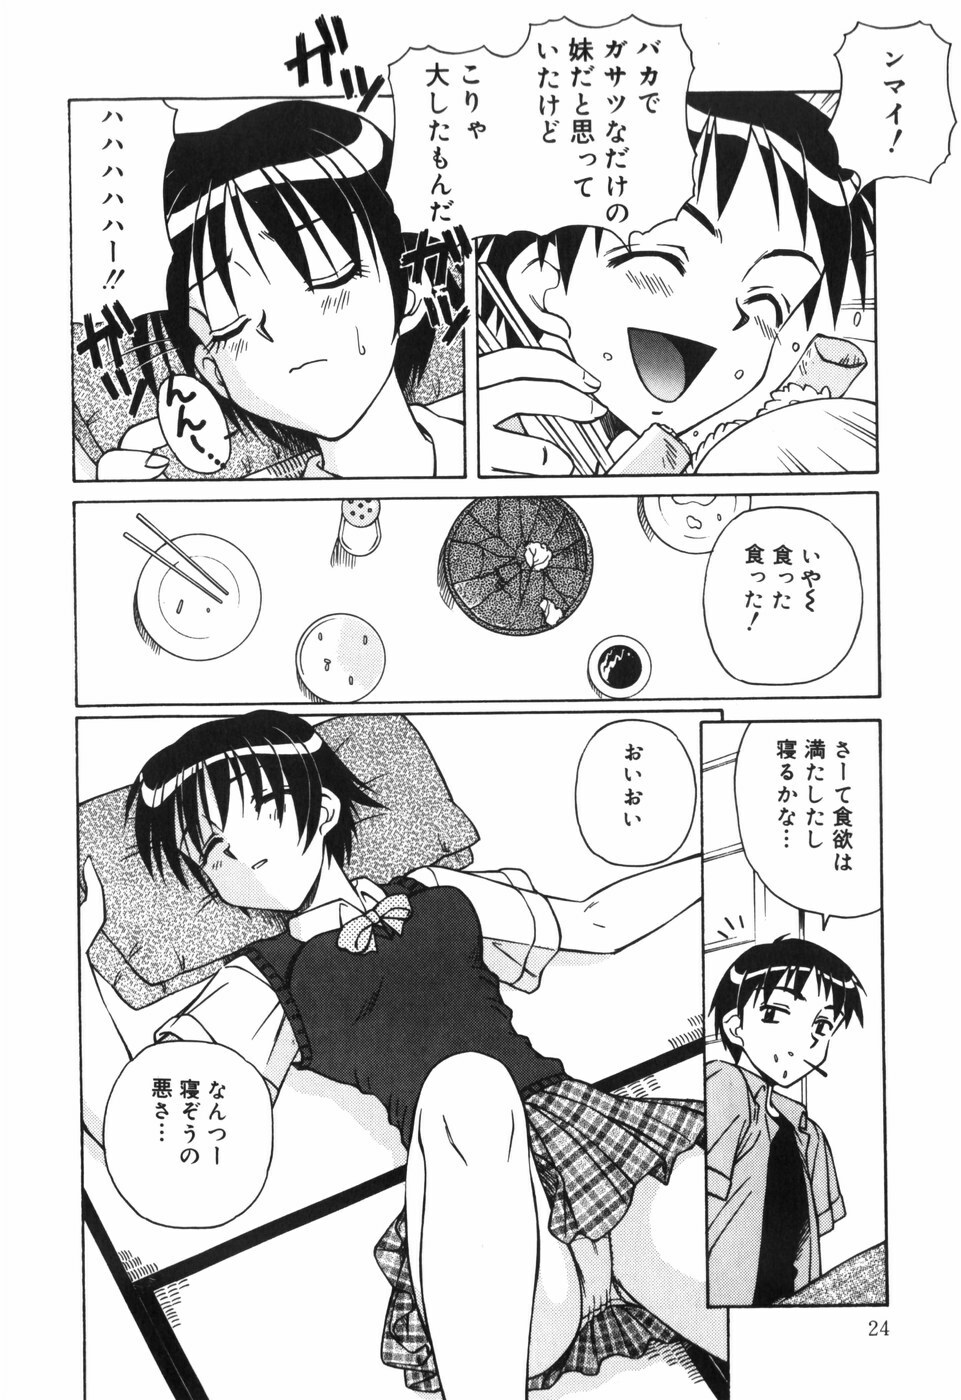 [Spark Utamaro] Shiru o Suu Nawa page 26 full